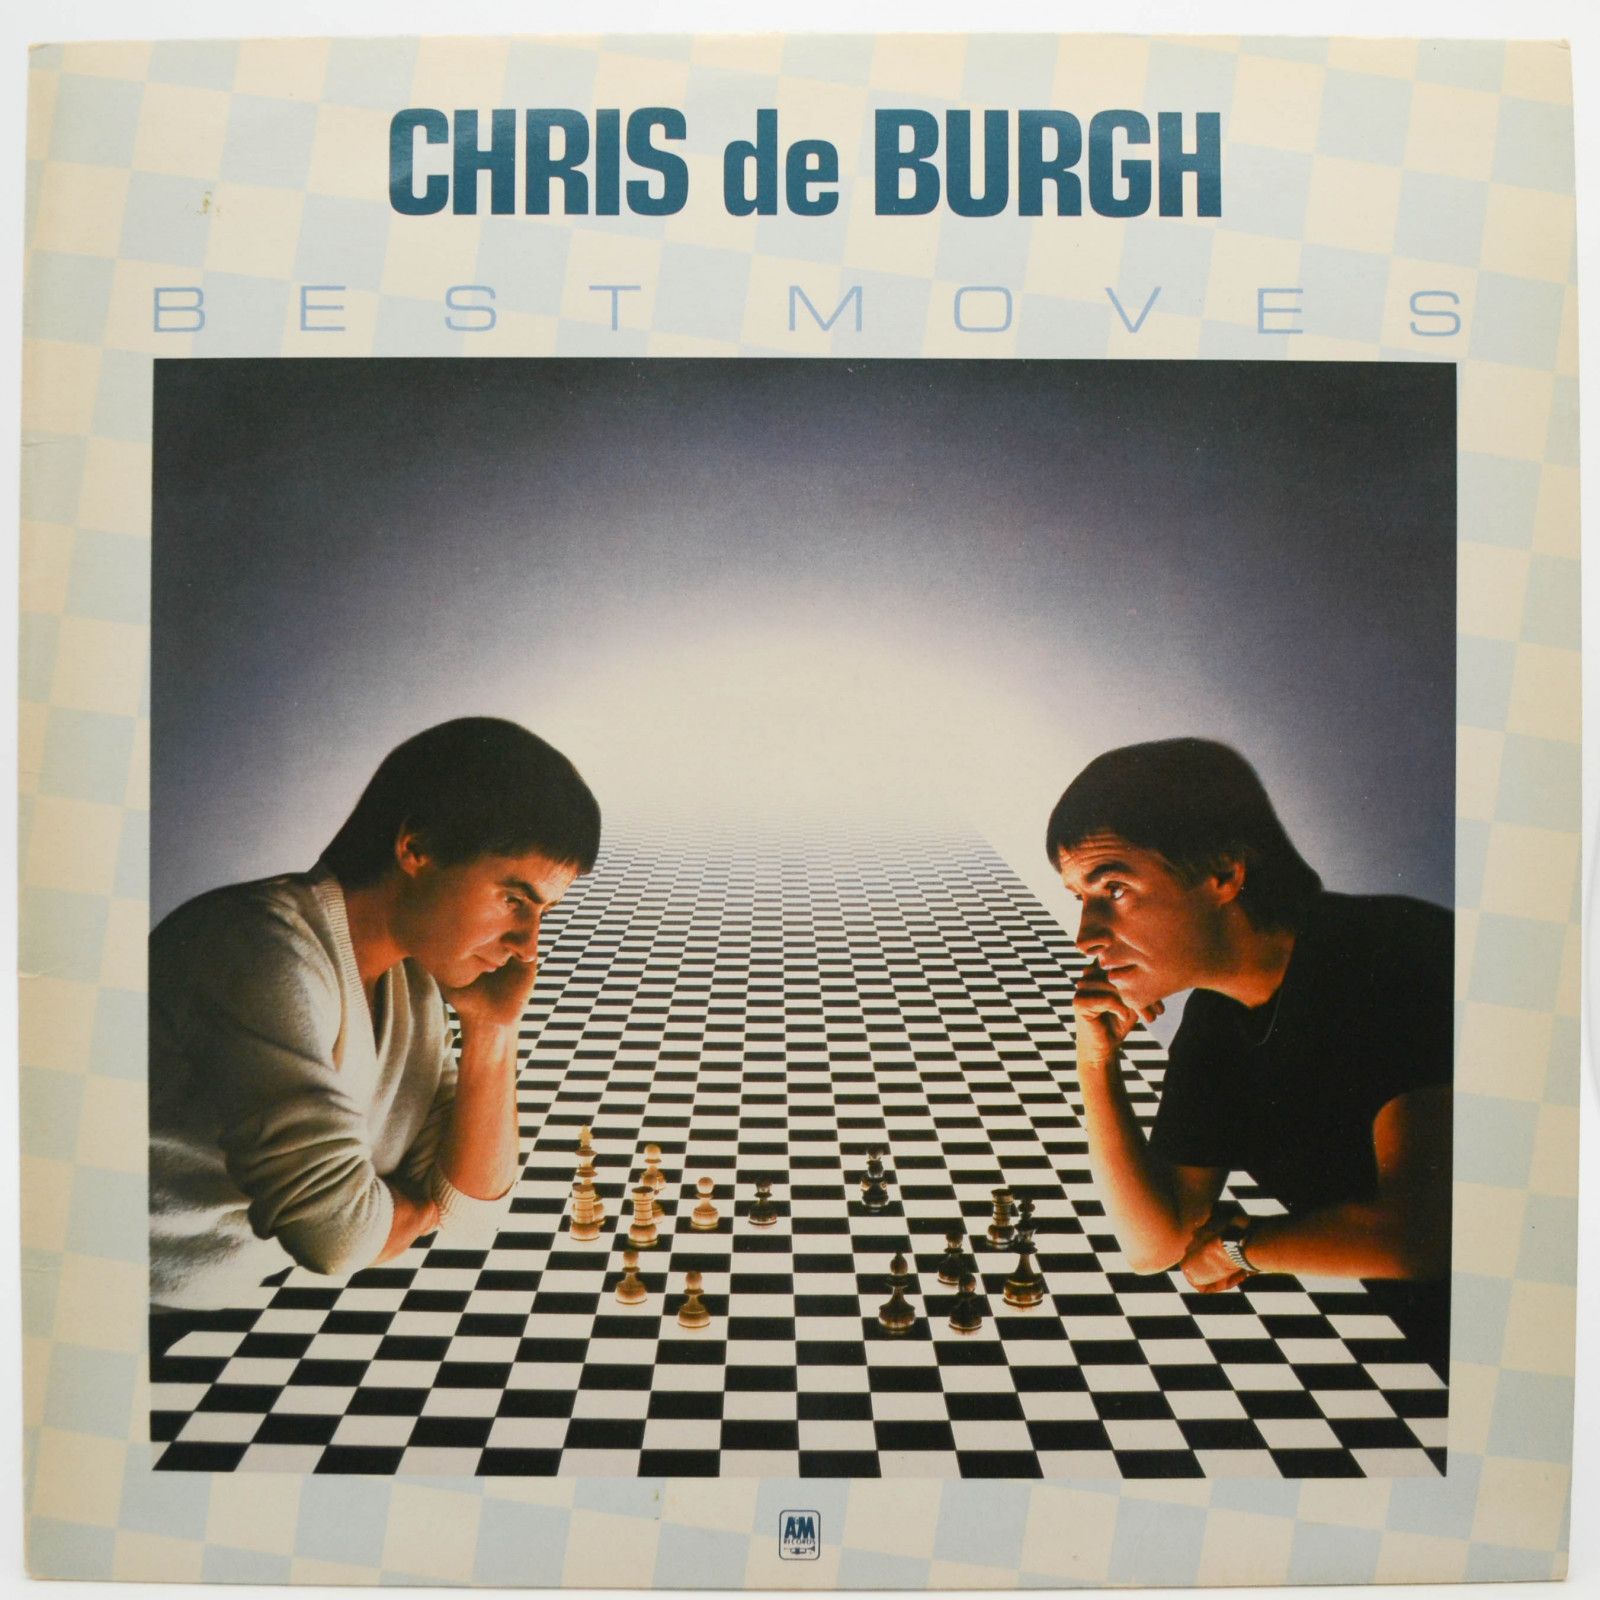 Chris de Burgh — Best Moves, 1981